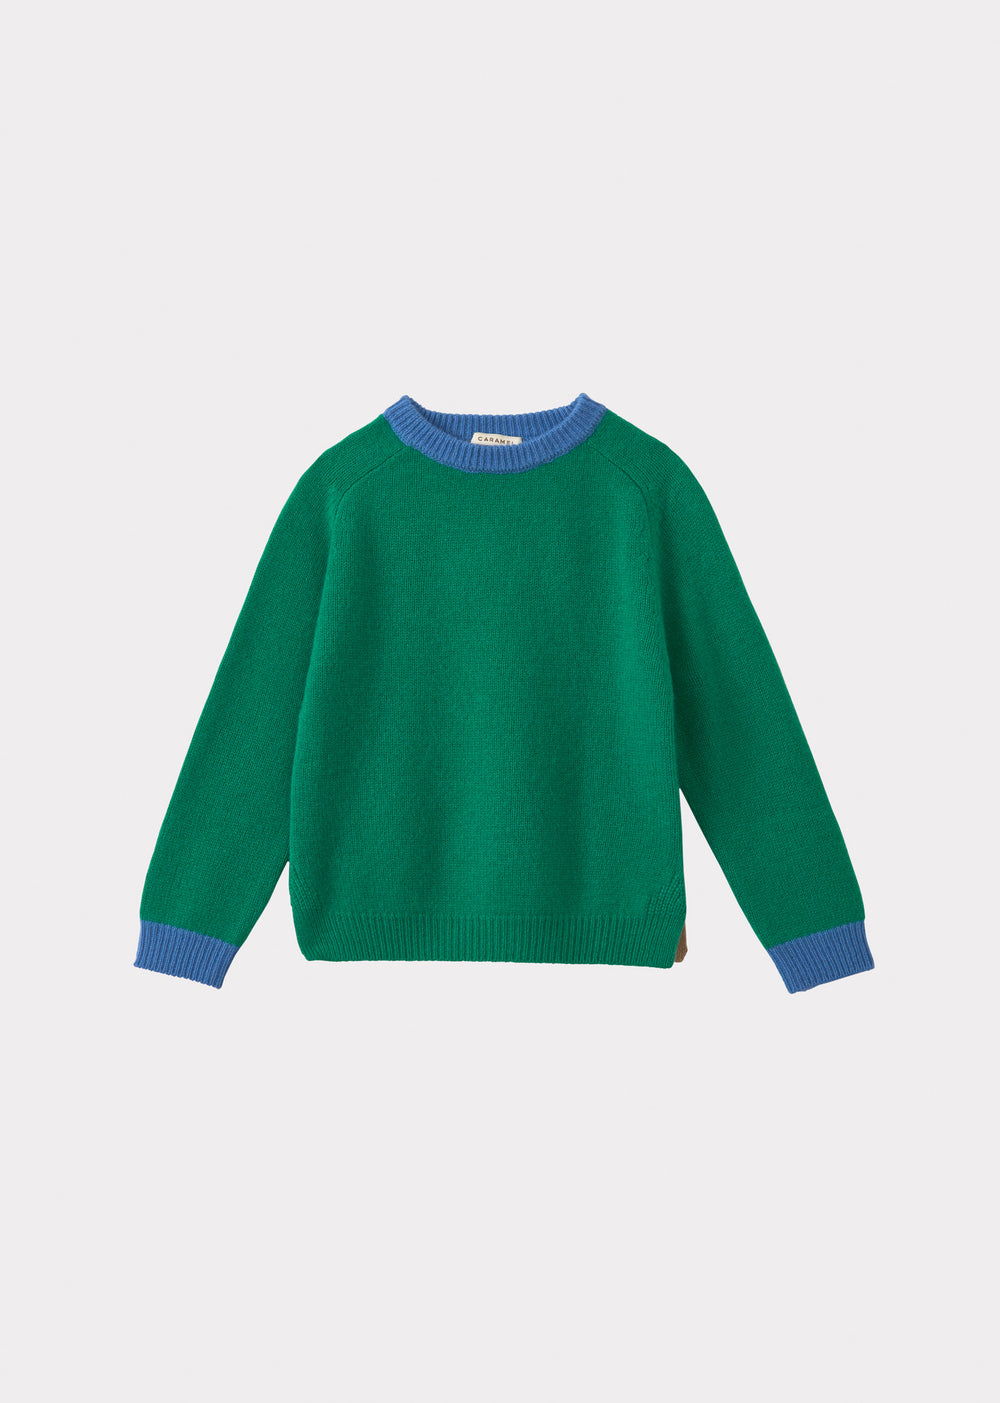 Boys KnitwearBoys Knitwear: Buy Knitwear for Boys Online | CARAMEL